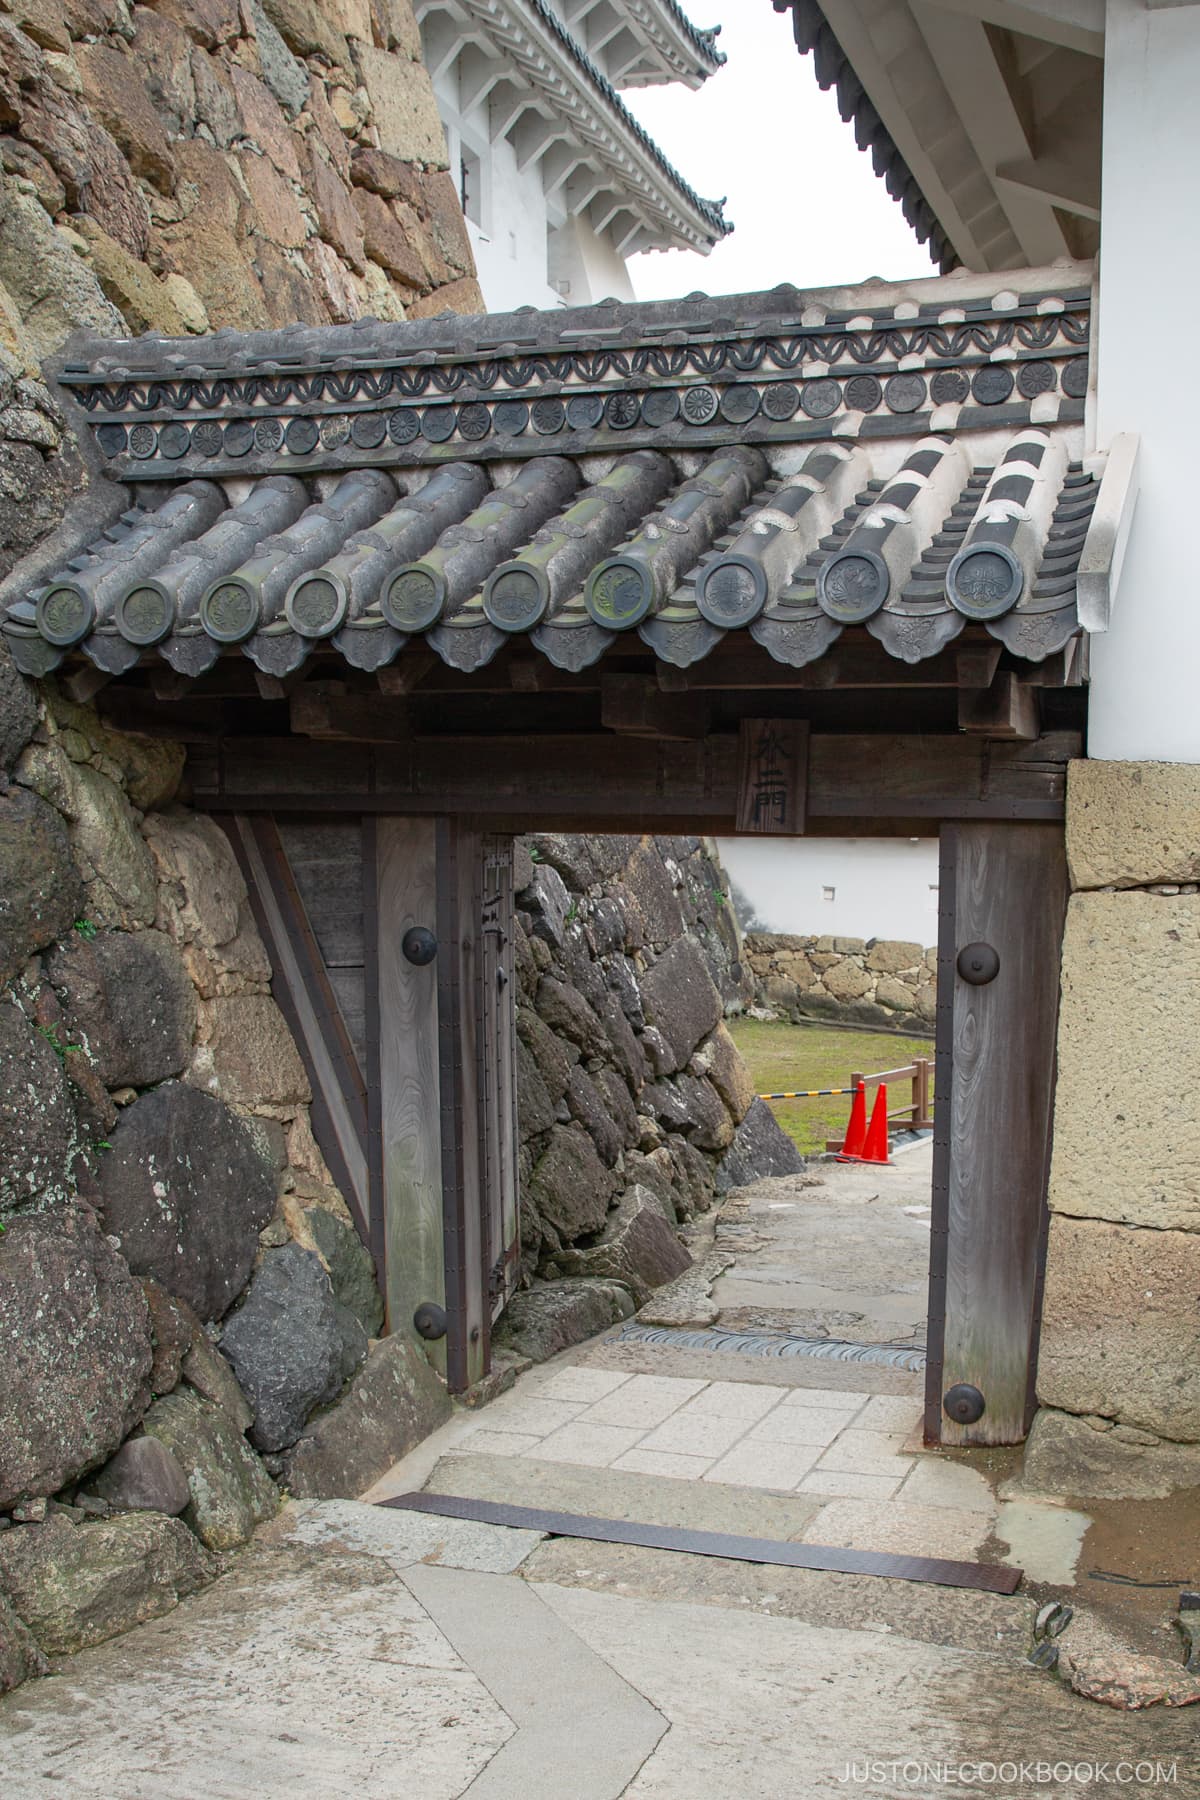 Ворота замка Химэдзи